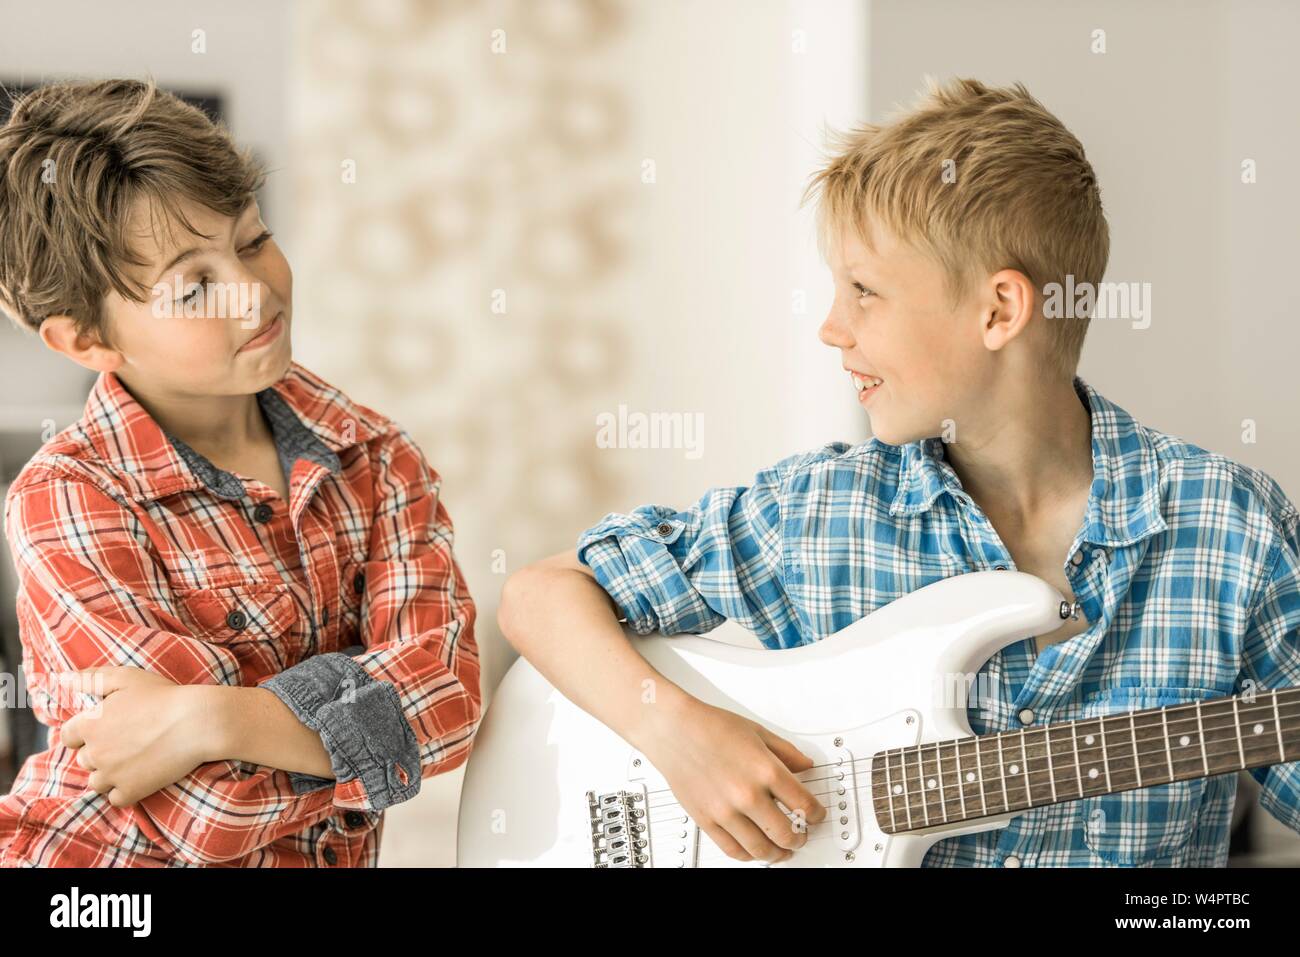 Zwei Jungen, Freunde, 10 Jahre alt, einer spielt E-Gitarre, lächelnd, Deutschland Stockfoto